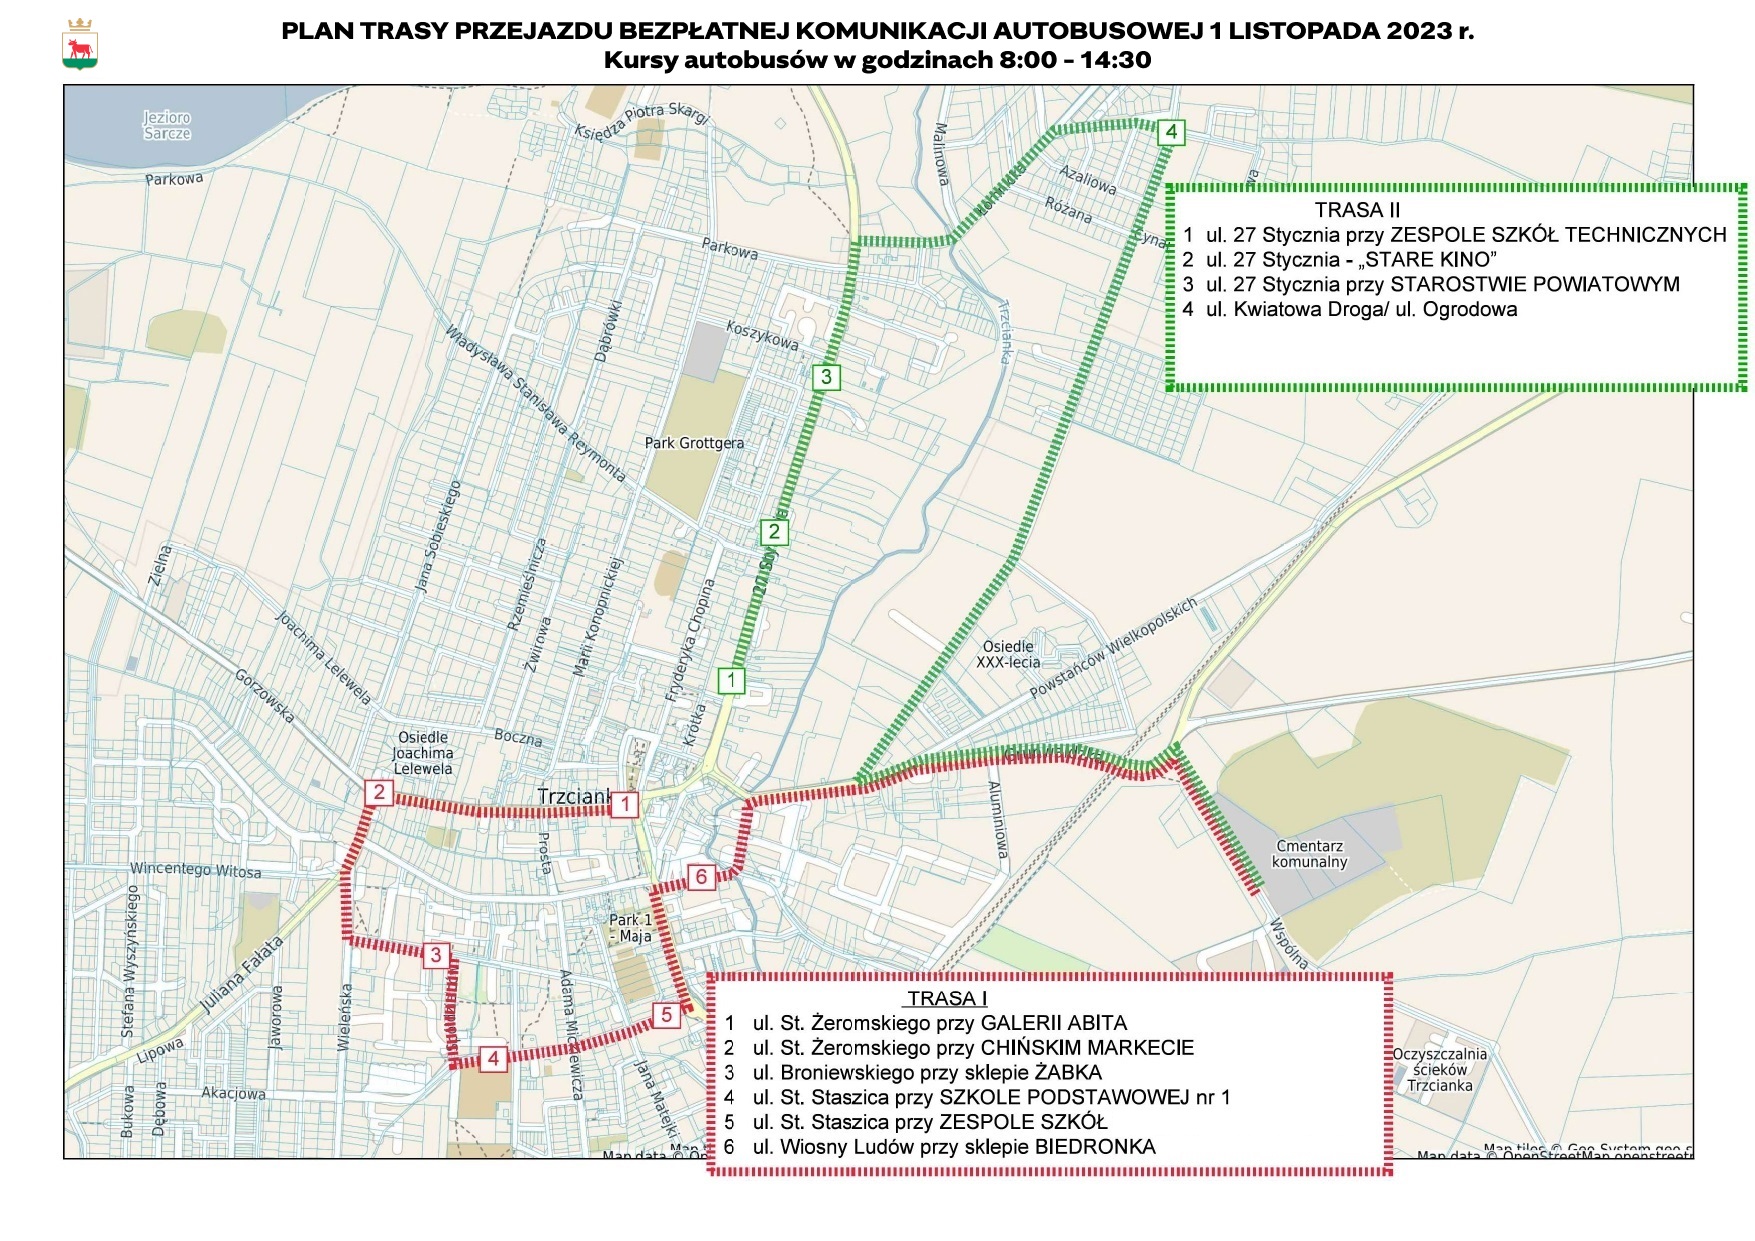 Plan trasy przejazdu bezpłatnej komunikacji autobusowej na dzień 1 listopada 2023 r.